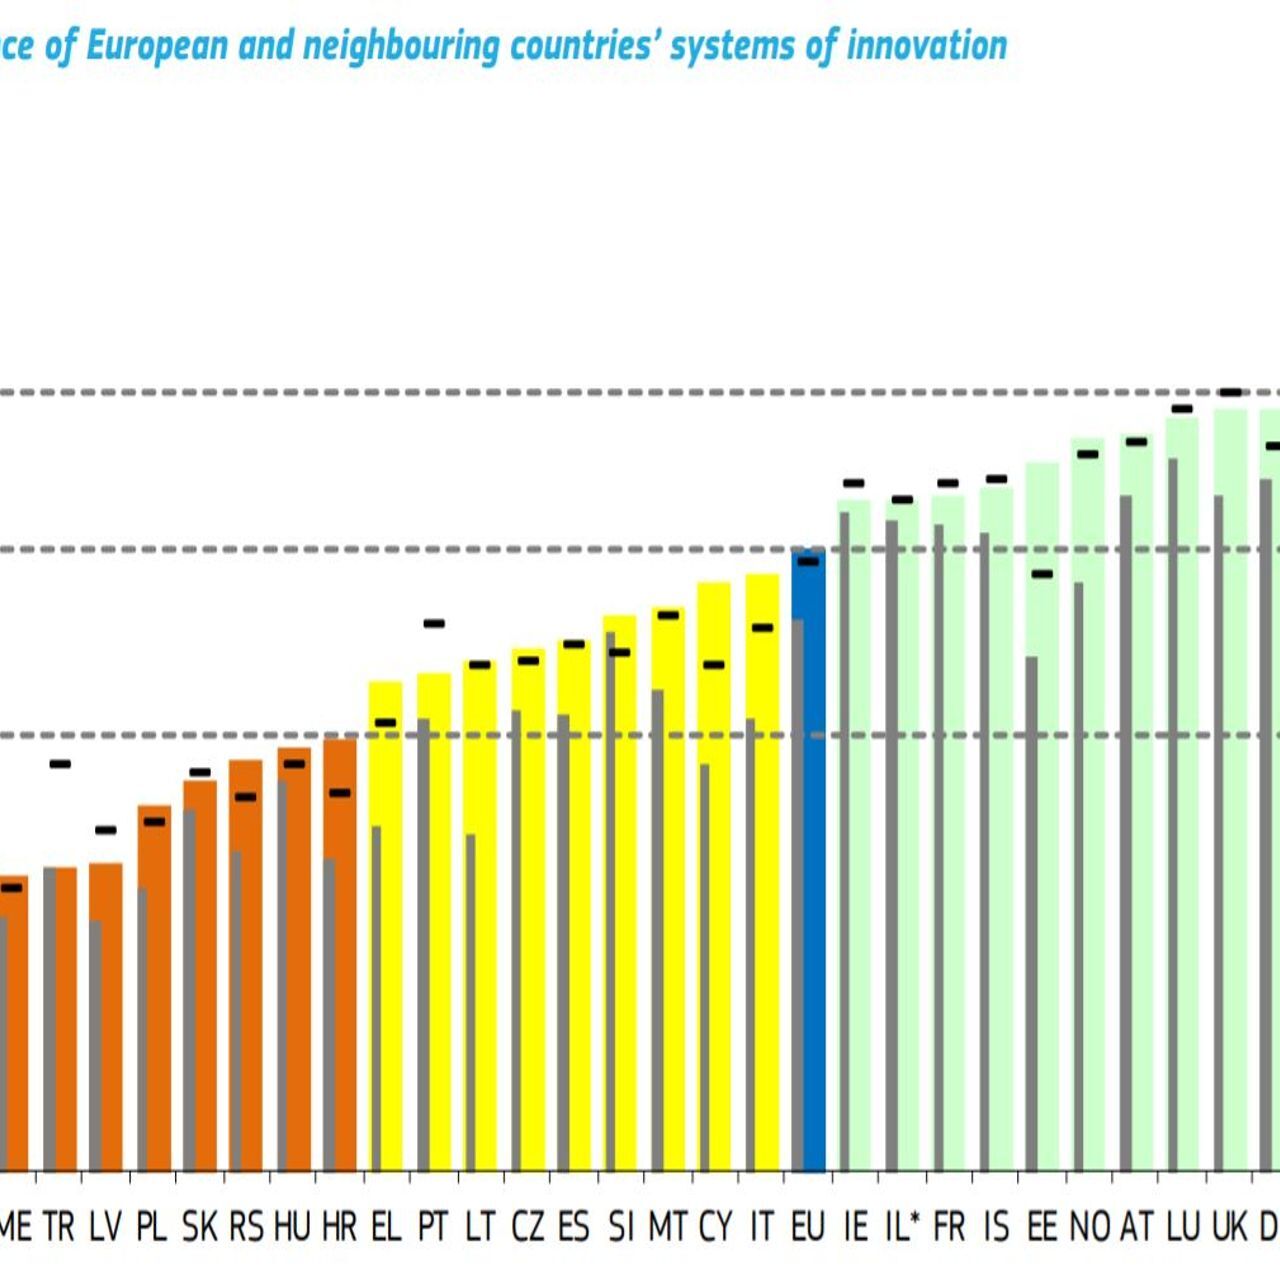 Le classement 2021 du degré d'innovation des pays européens